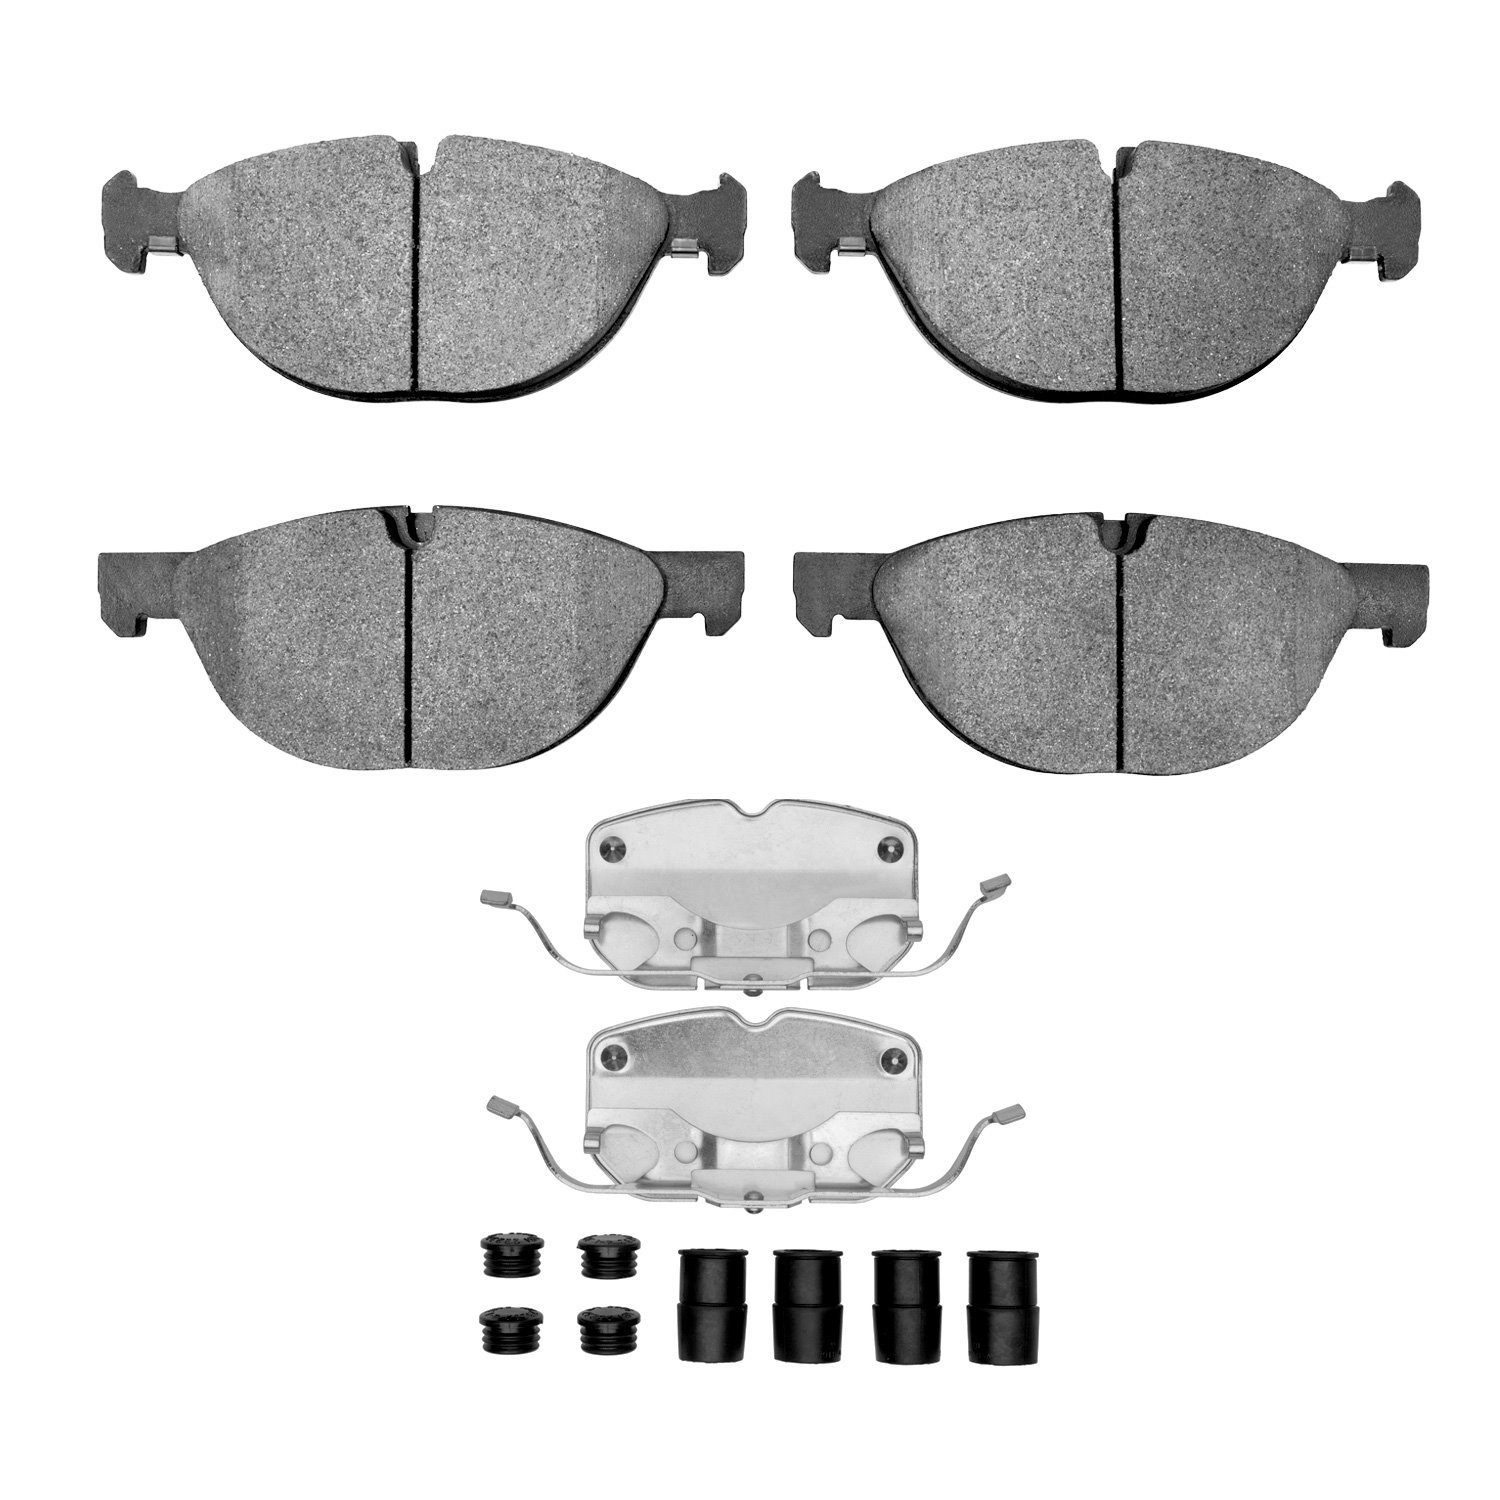 1600-1381-01 5000 Euro Ceramic Brake Pads & Hardware Kit, 2008-2019 BMW, Position: Front